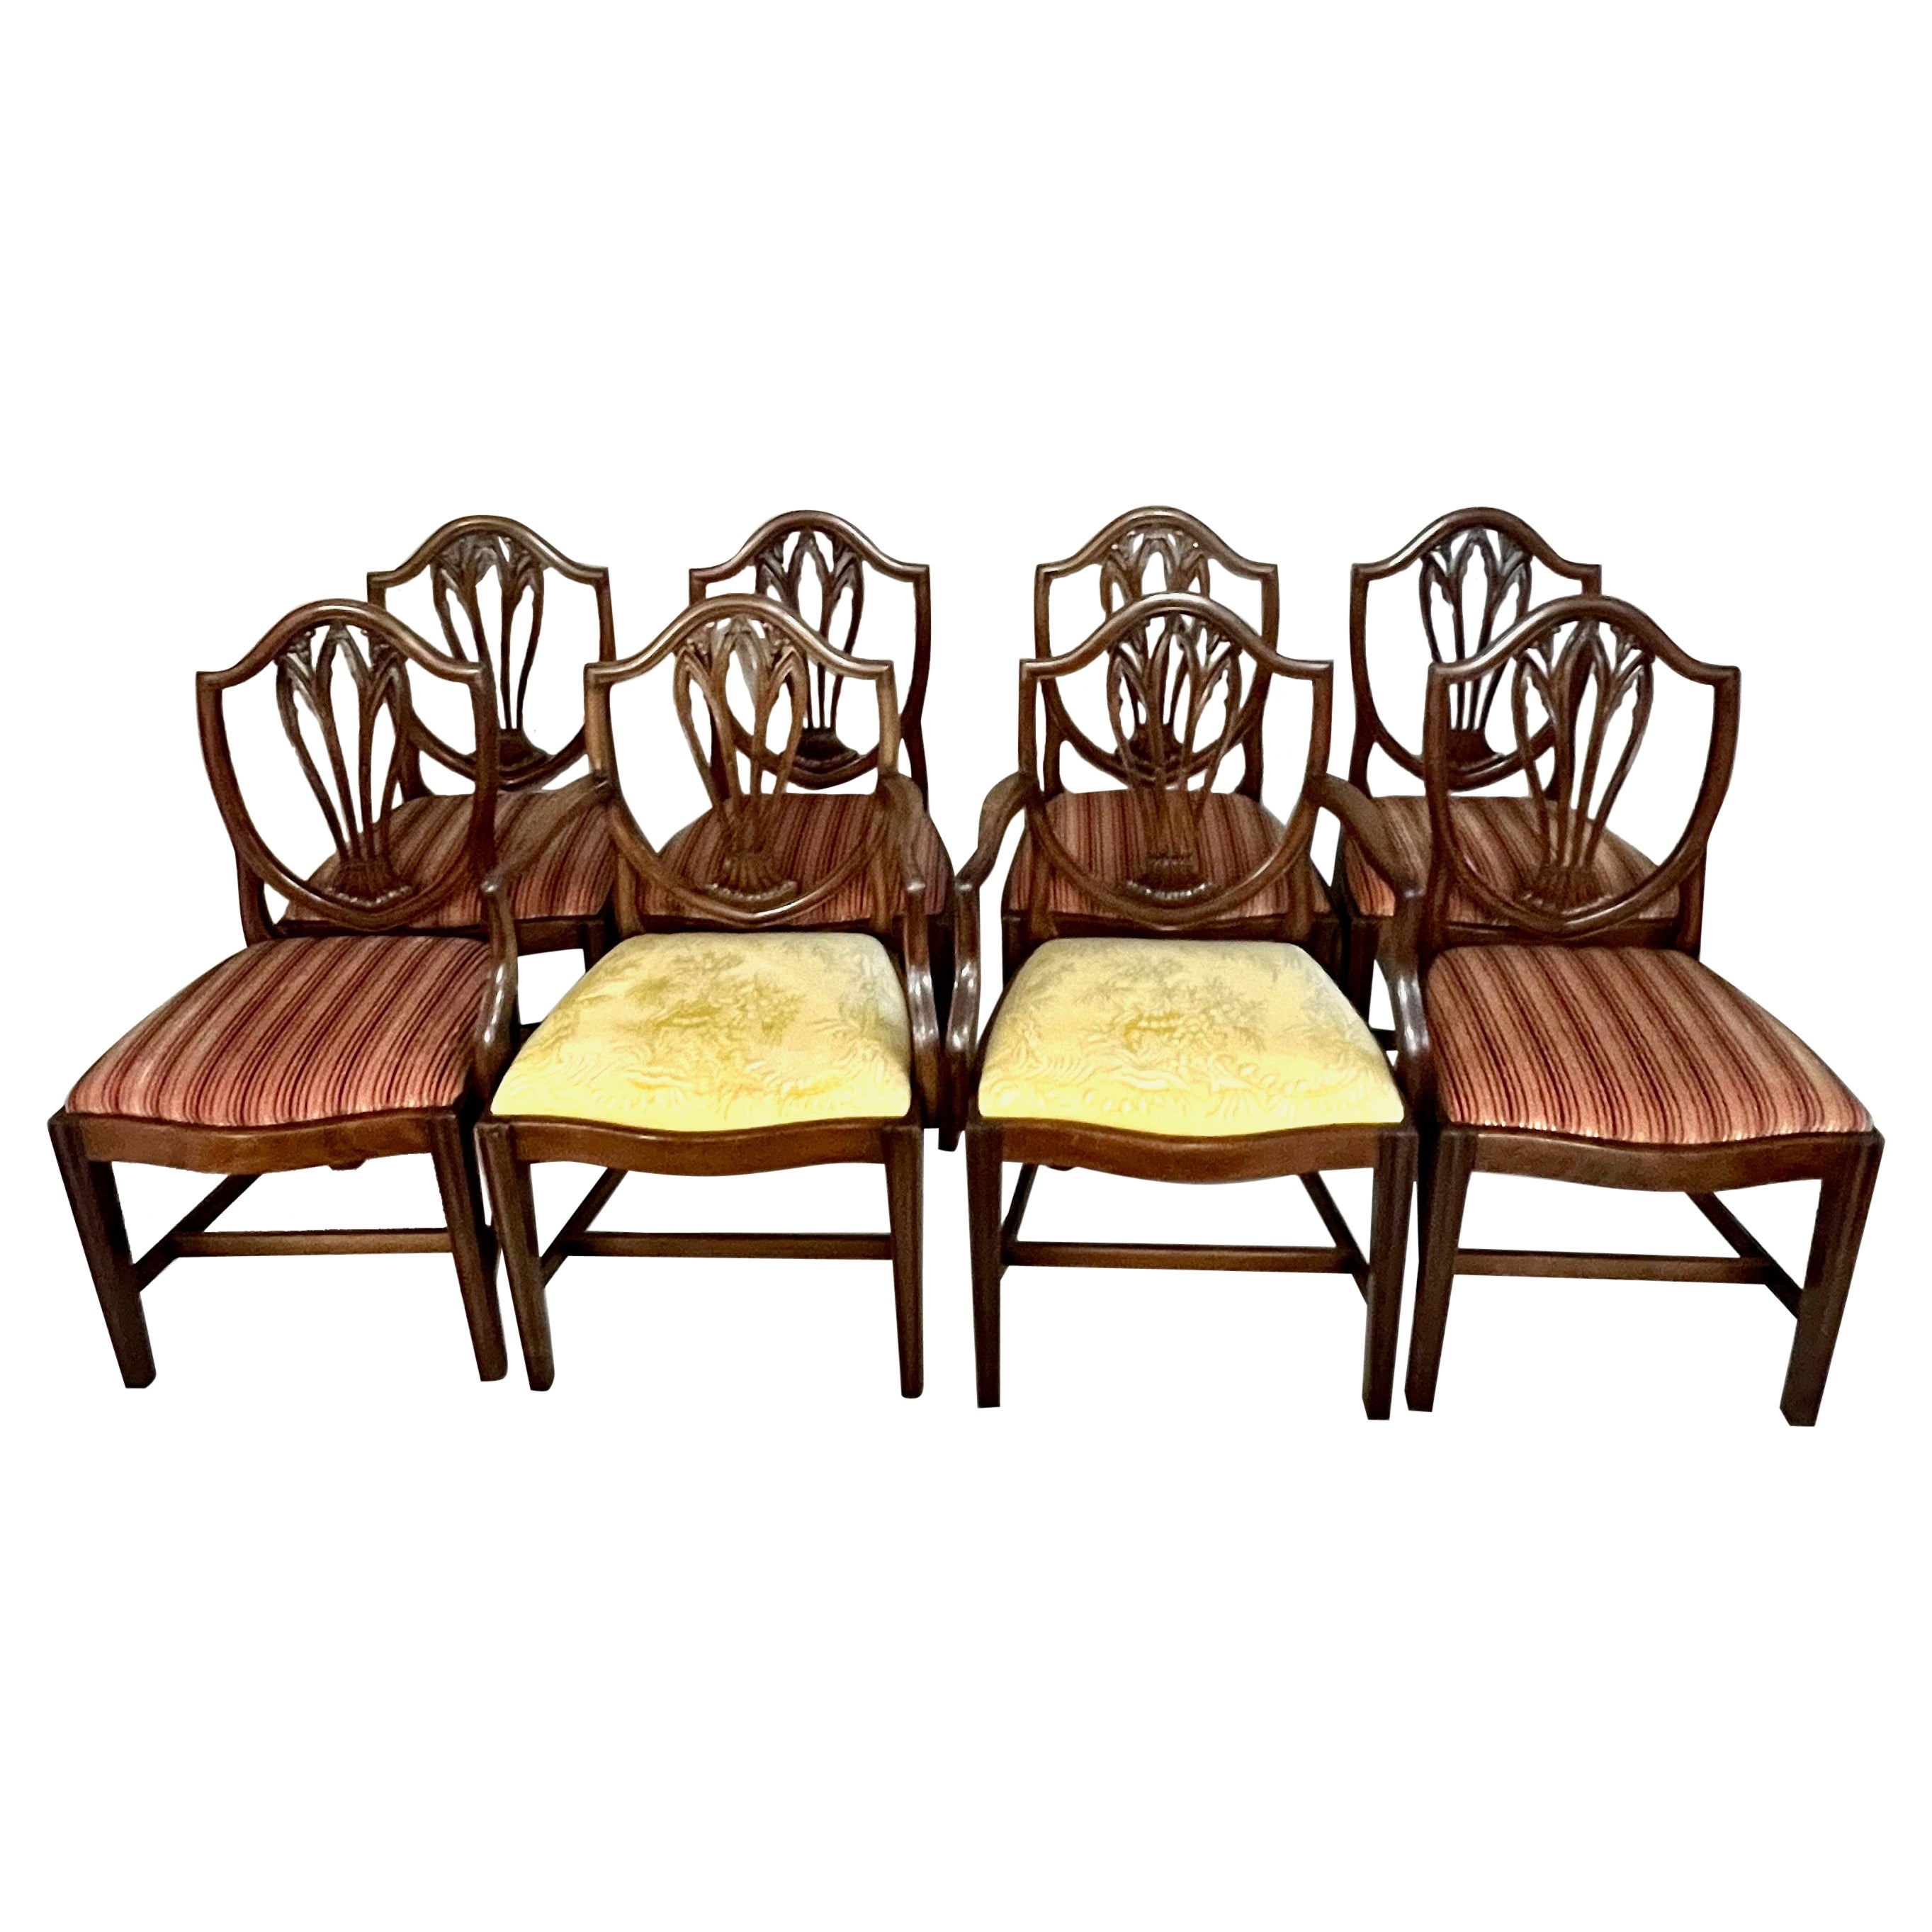 Il s'agit d'un superbe ensemble de chaises de salle à manger George III assemblées d'après un modèle de George Hepplewhite. Les deux fauteuils et les quatre chaises latérales datent de la fin du XVIIIe siècle. Deux des chaises latérales sont plus